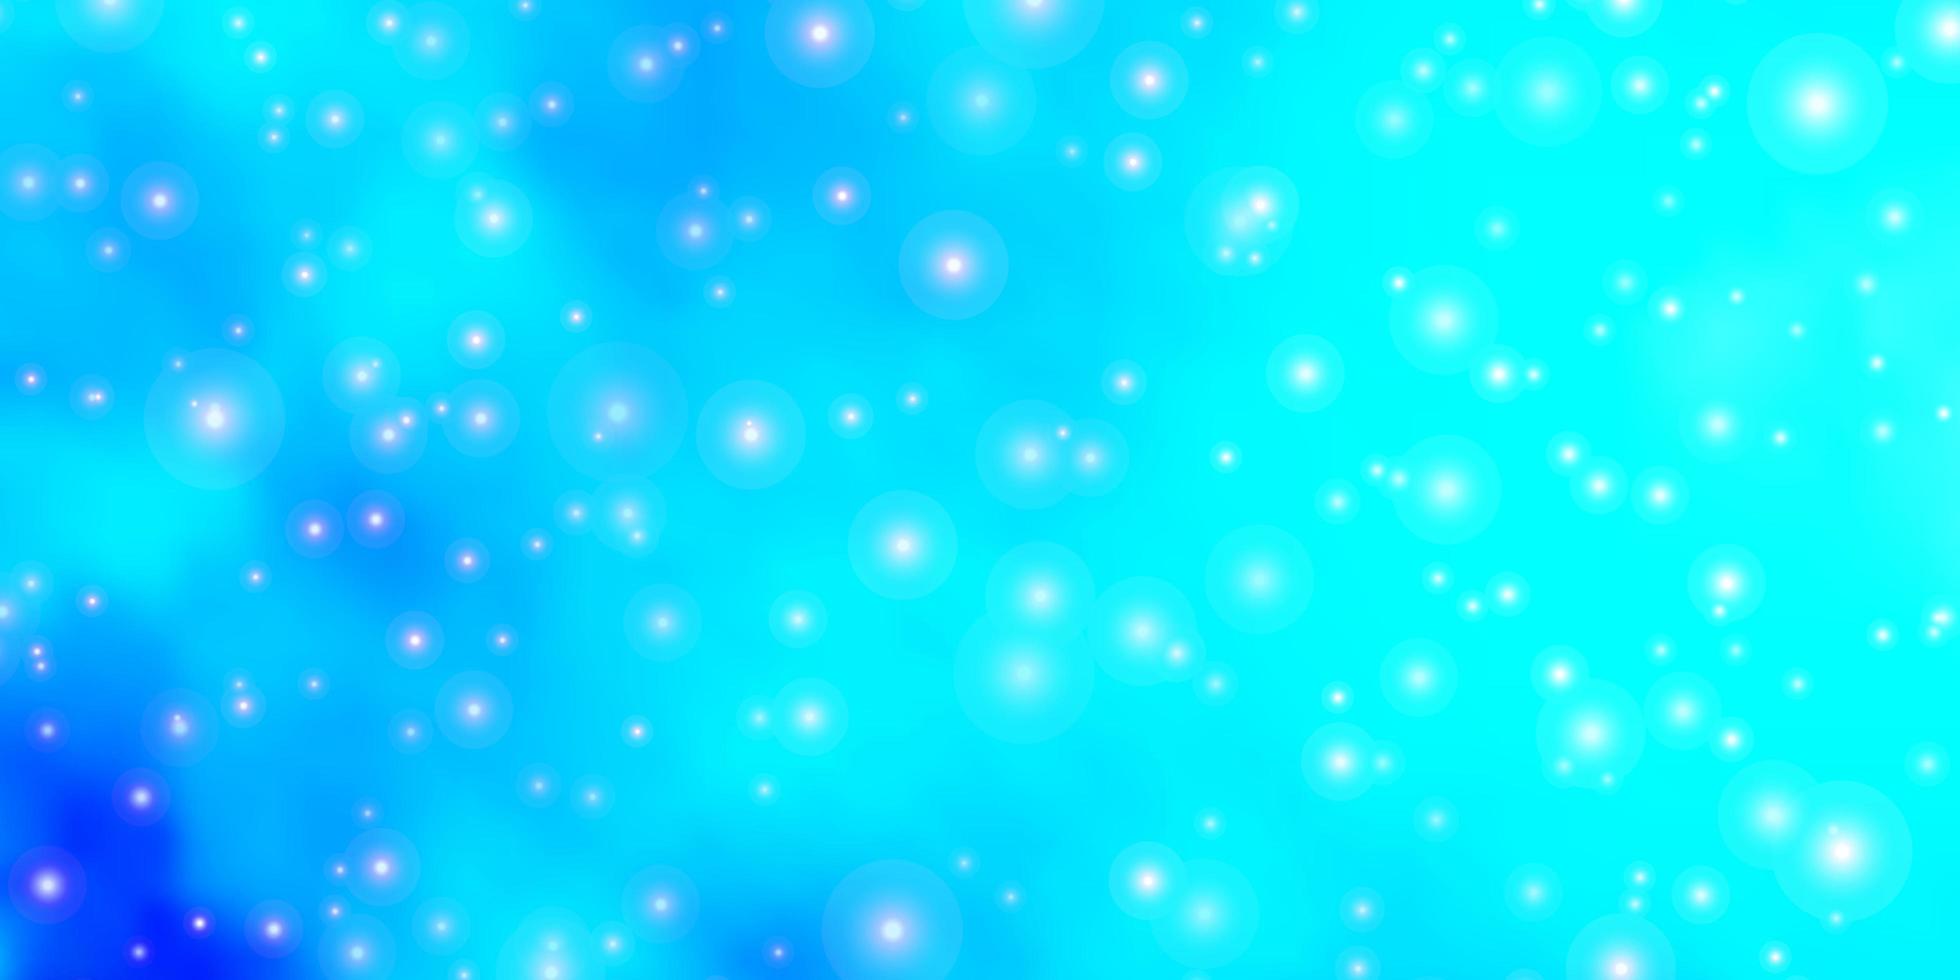 modelo de vetor azul claro com estrelas de néon ilustração decorativa com estrelas no tema de modelo abstrato para telefones celulares